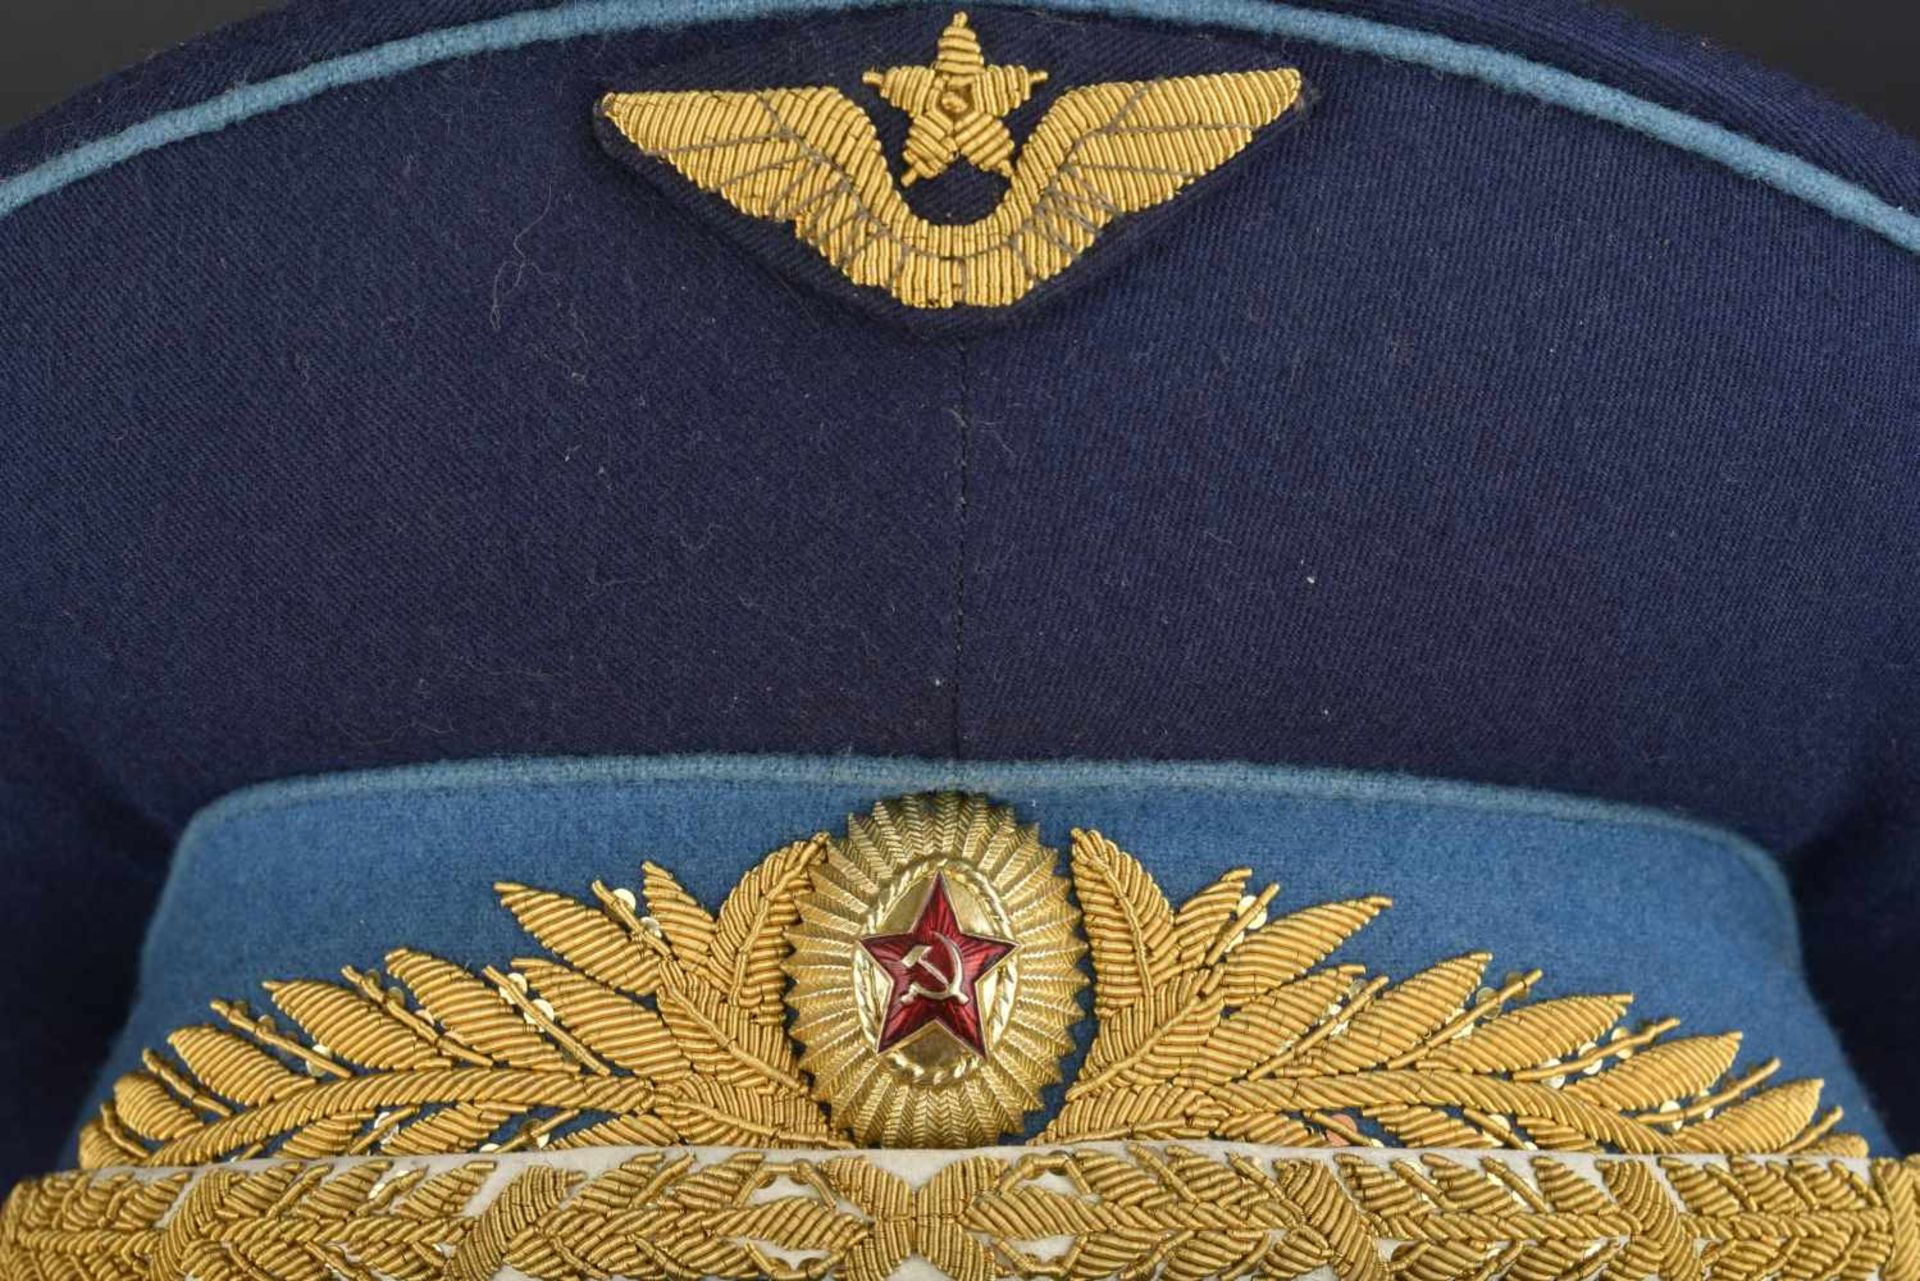 Casquette de général d'aviation soviétique En tissu bleu foncé, bandeau bleu ciel, insigne - Image 3 of 4